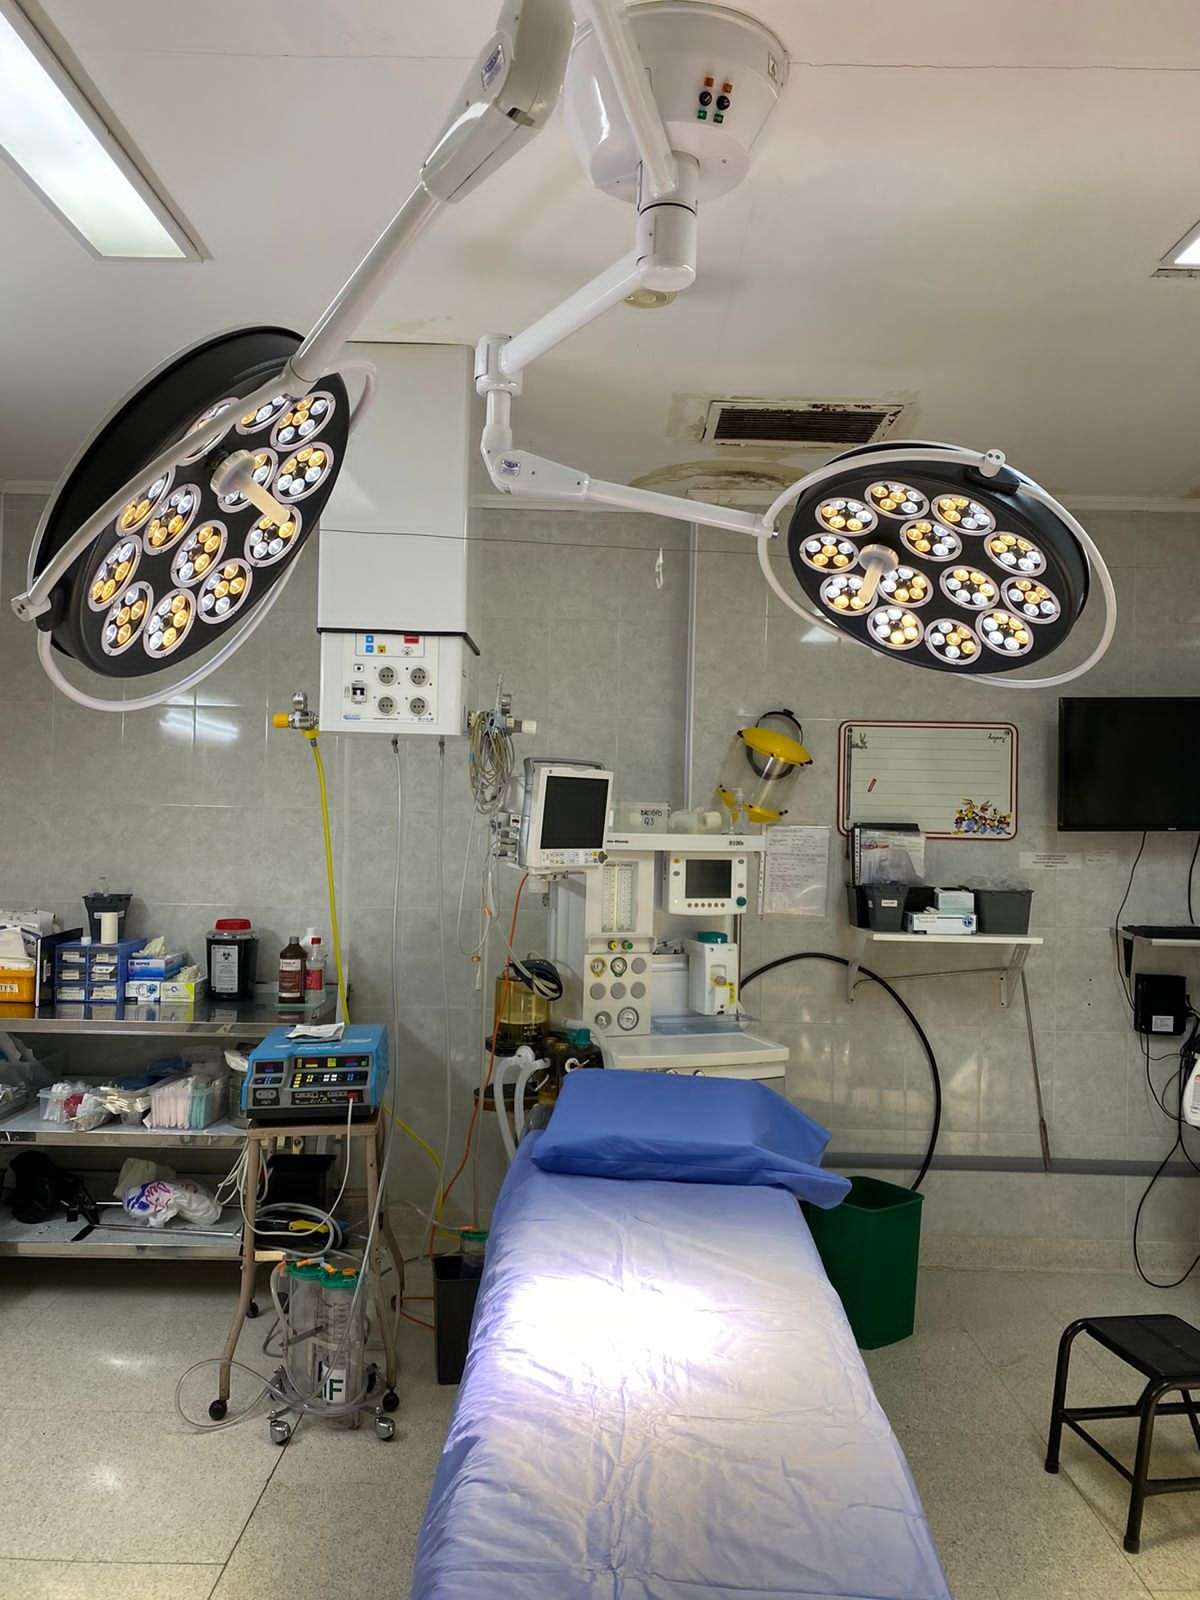 El moderno sistema de luces ya se encuentra instalado en el sector de quirófano del Hospital.